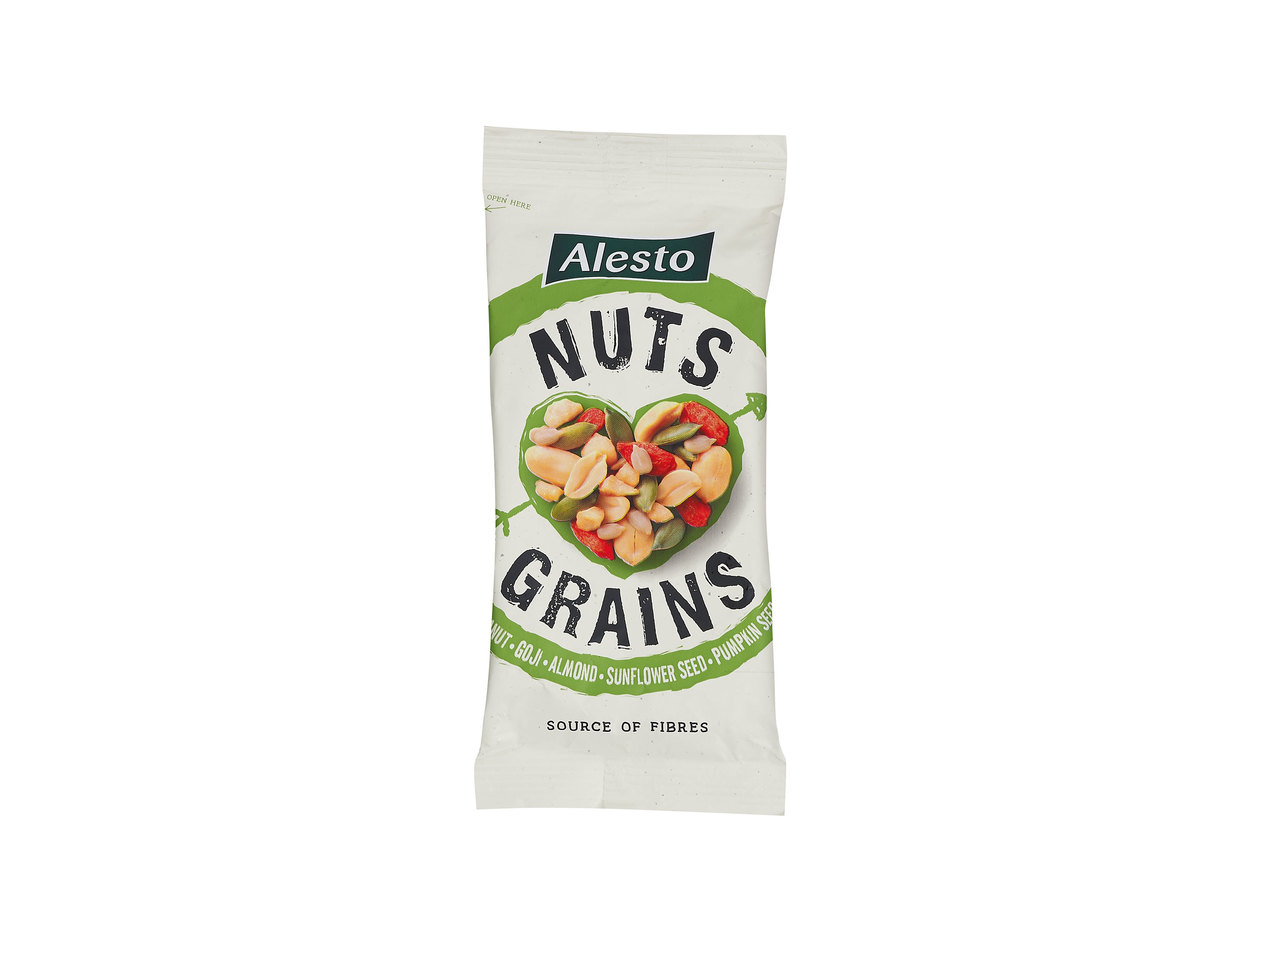 Nuts & grains